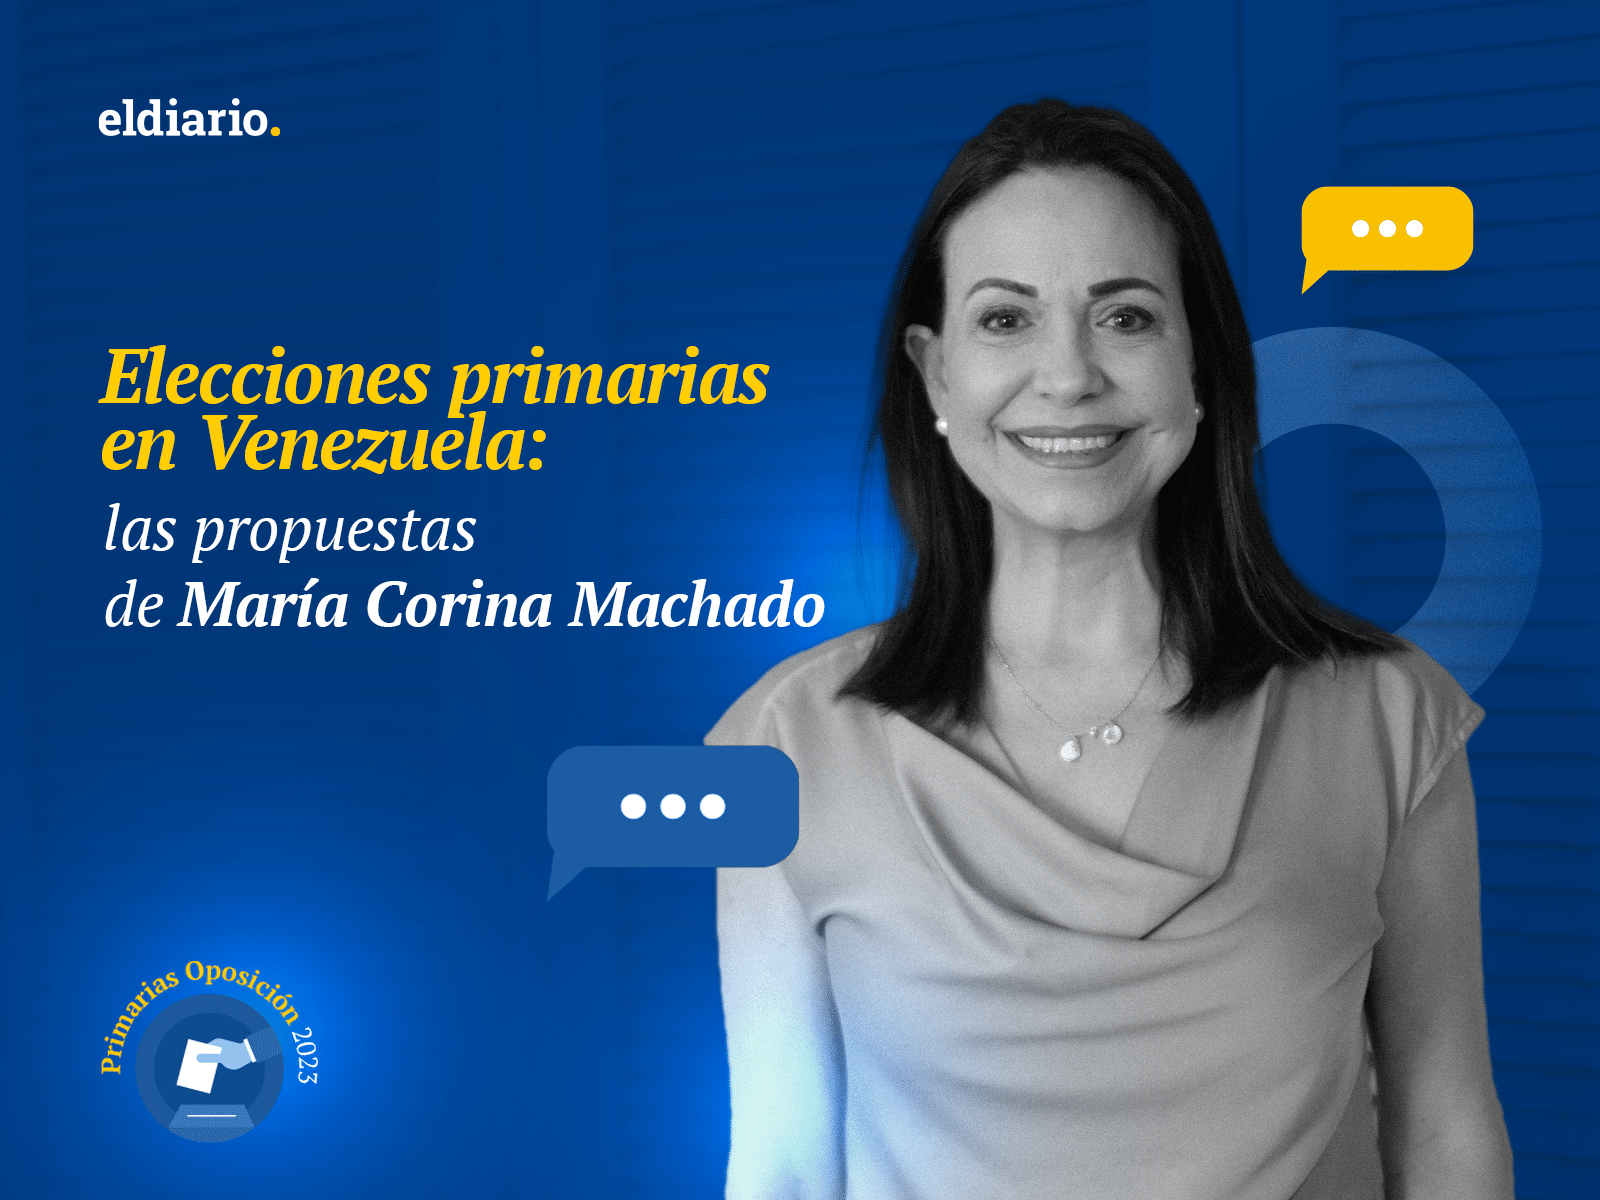 Elecciones primarias en Venezuela: las propuestas de María Corina Machado